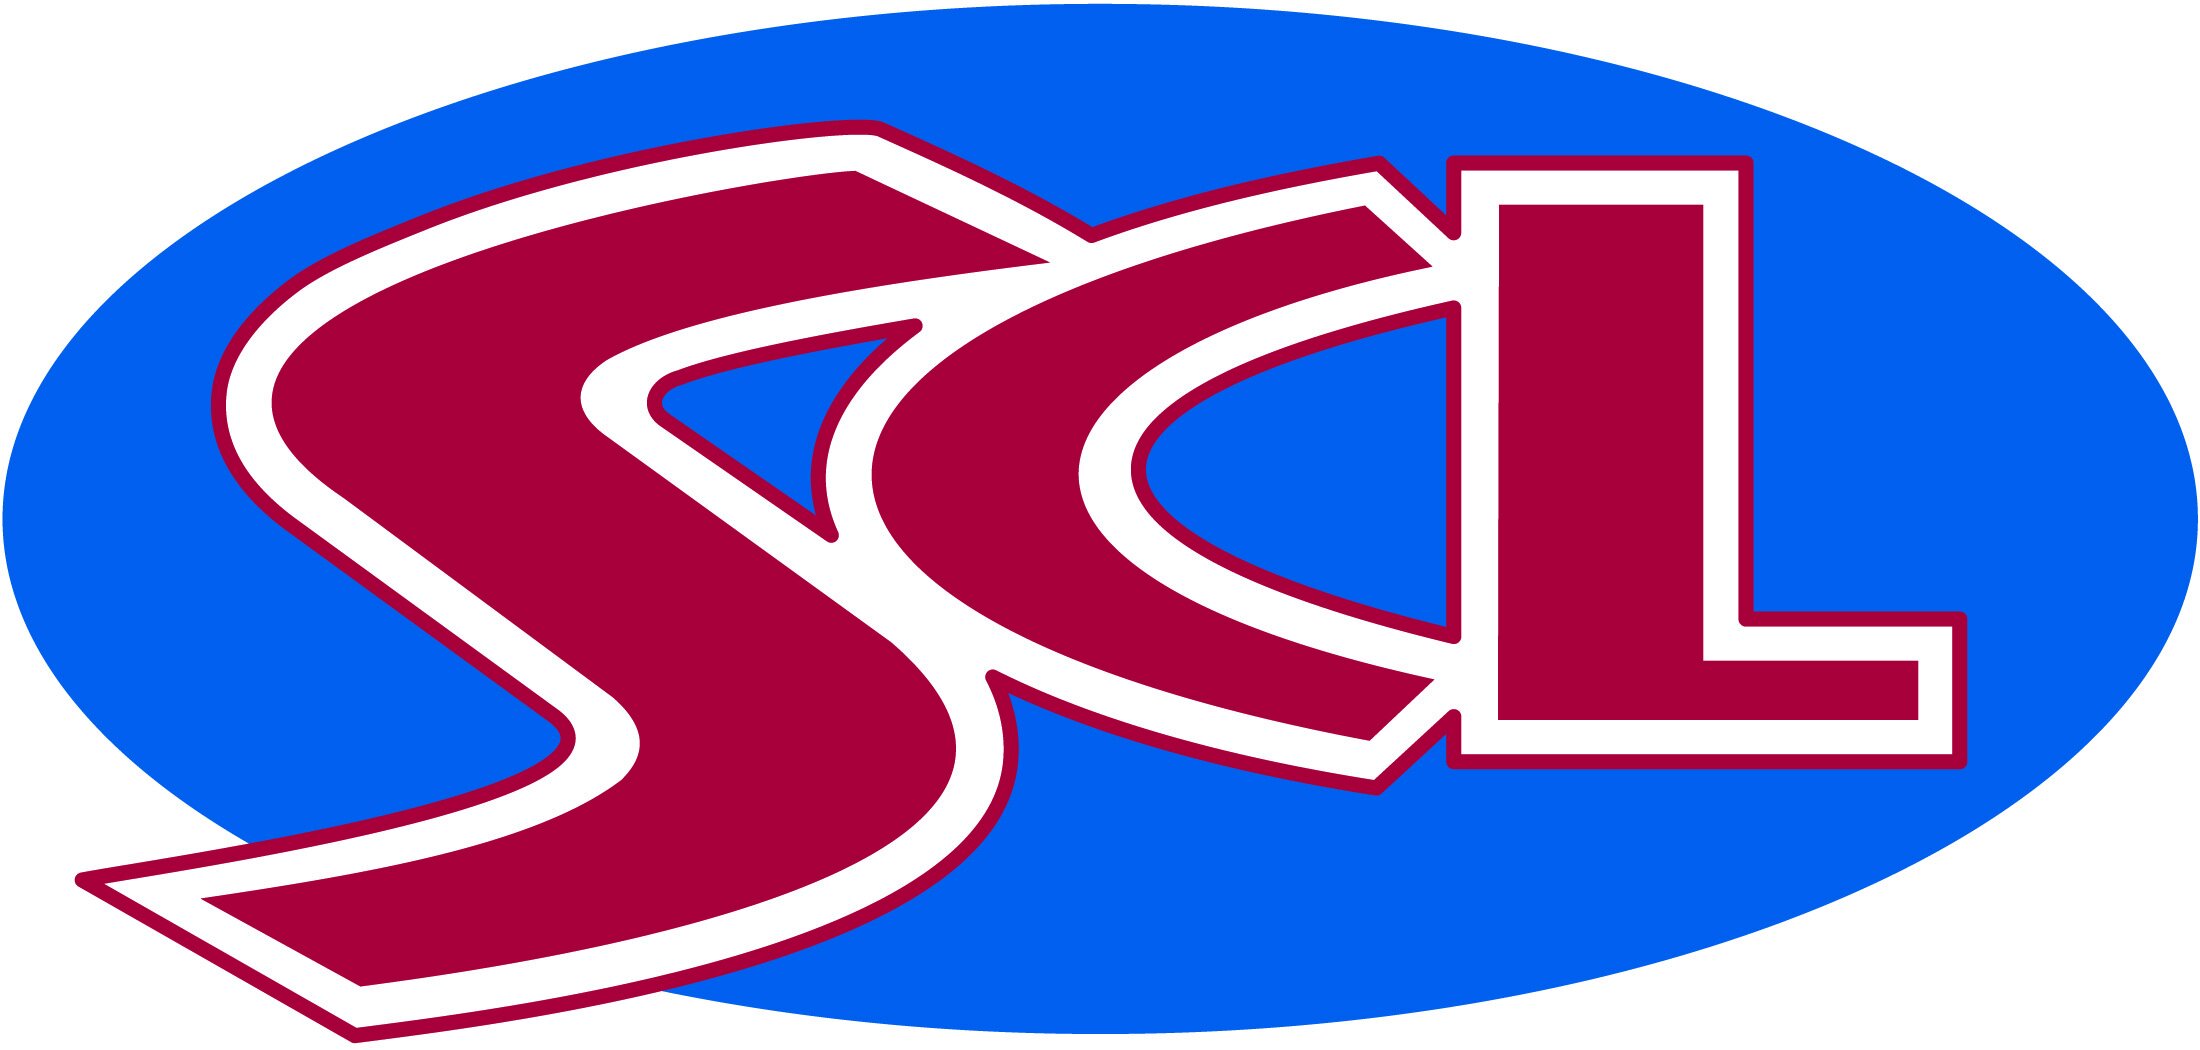 NEW-SCL-Logo-2.jpg